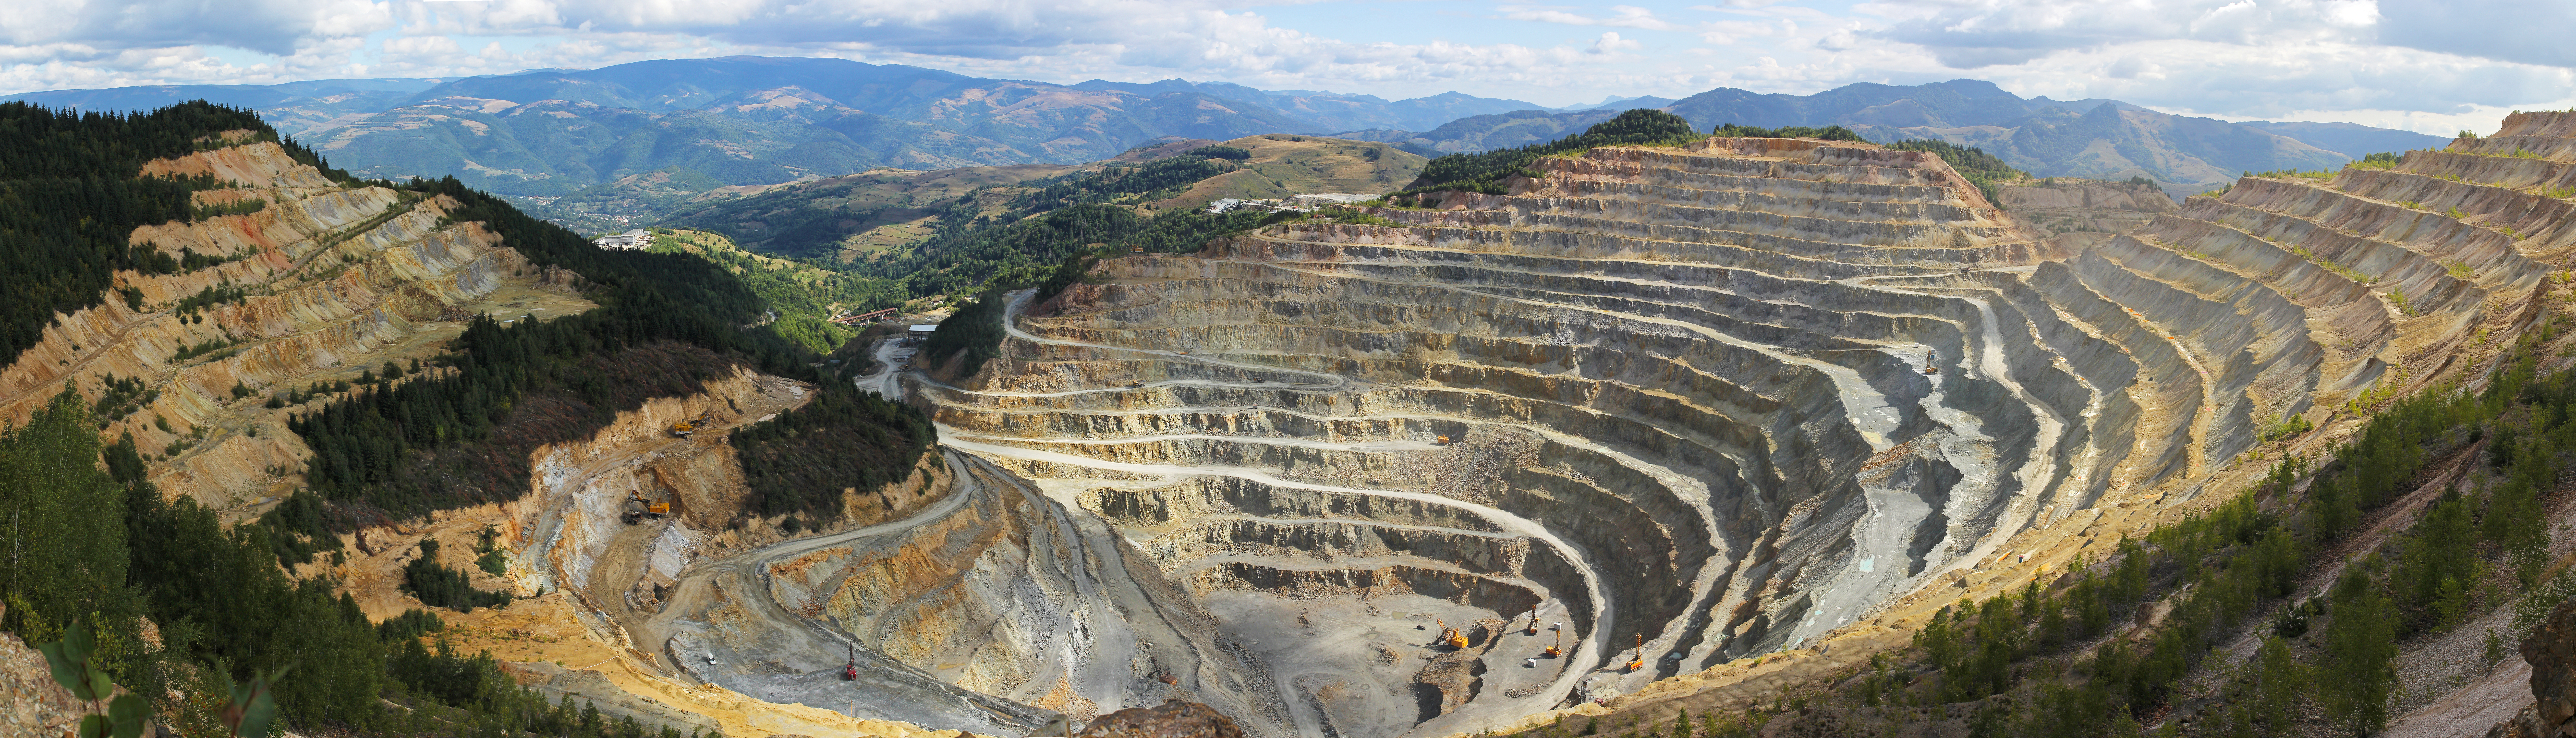 Large quarry in mountainous region